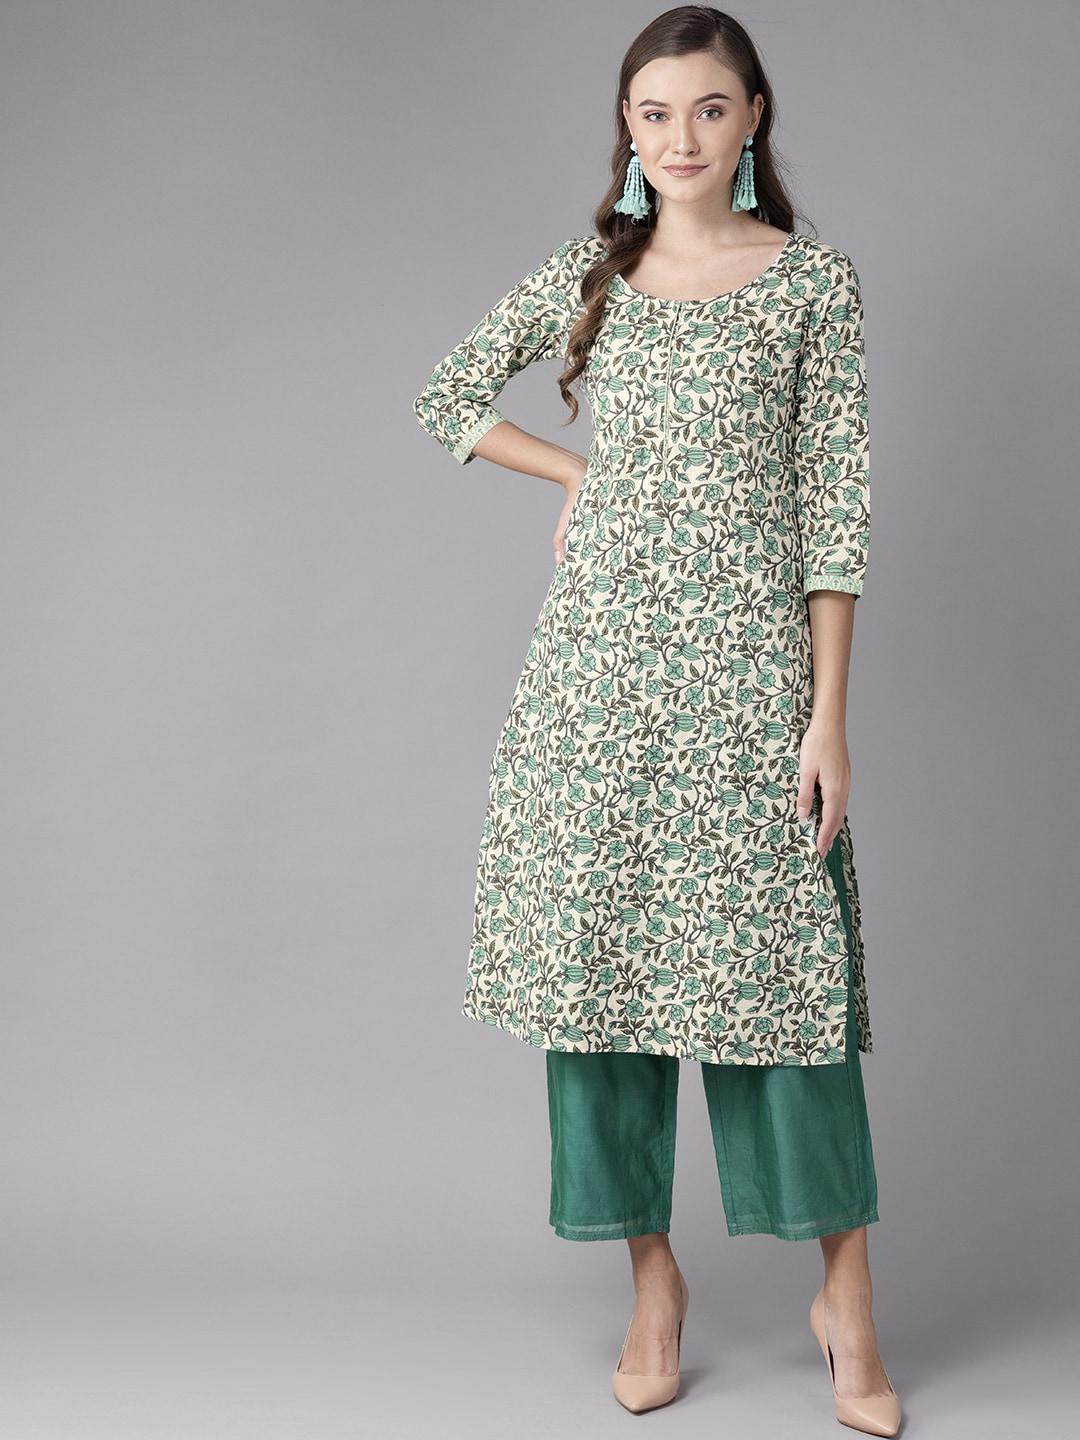 anayna women off-white & green printed straight kurta